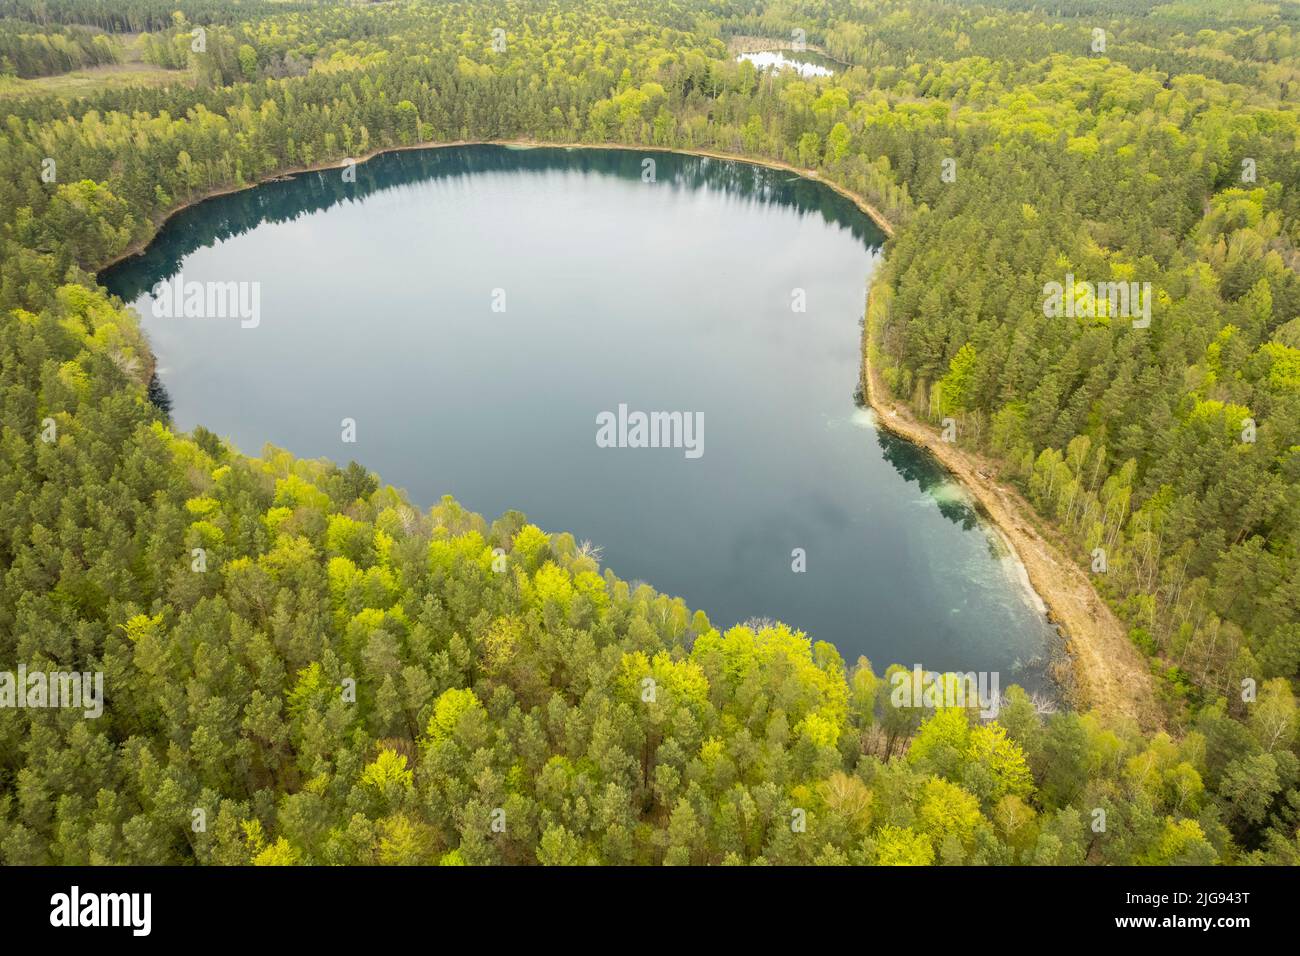 Europe, Poland, Warmian-Masurian Voivodeship, Jasne lake Stock Photo